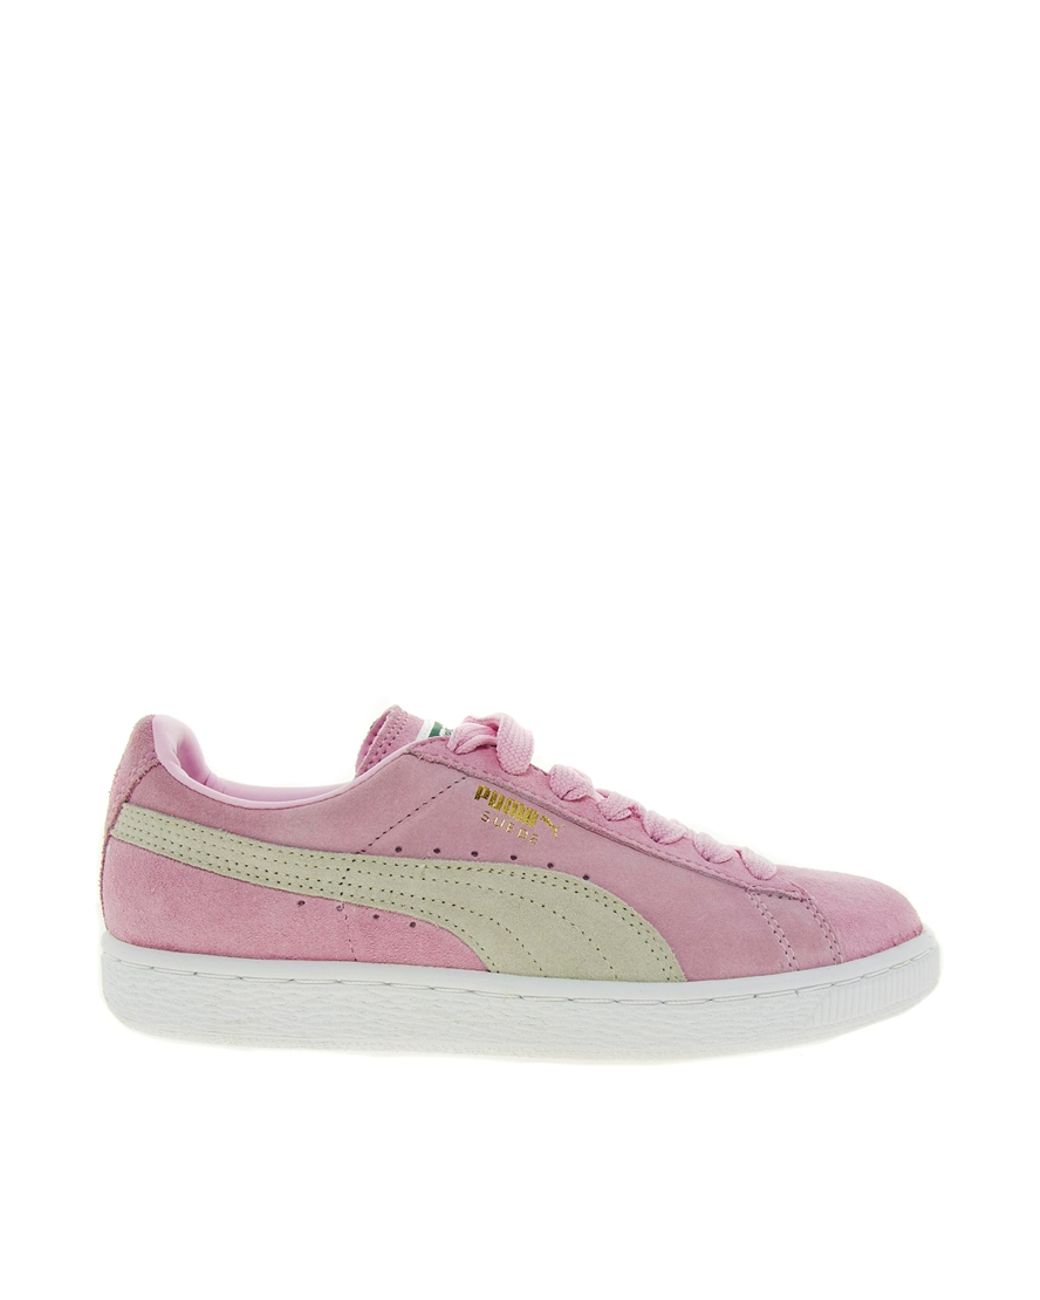 Van toepassing zijn eigenaar presentatie PUMA Suede Classic Baby Pink Sneakers | Lyst